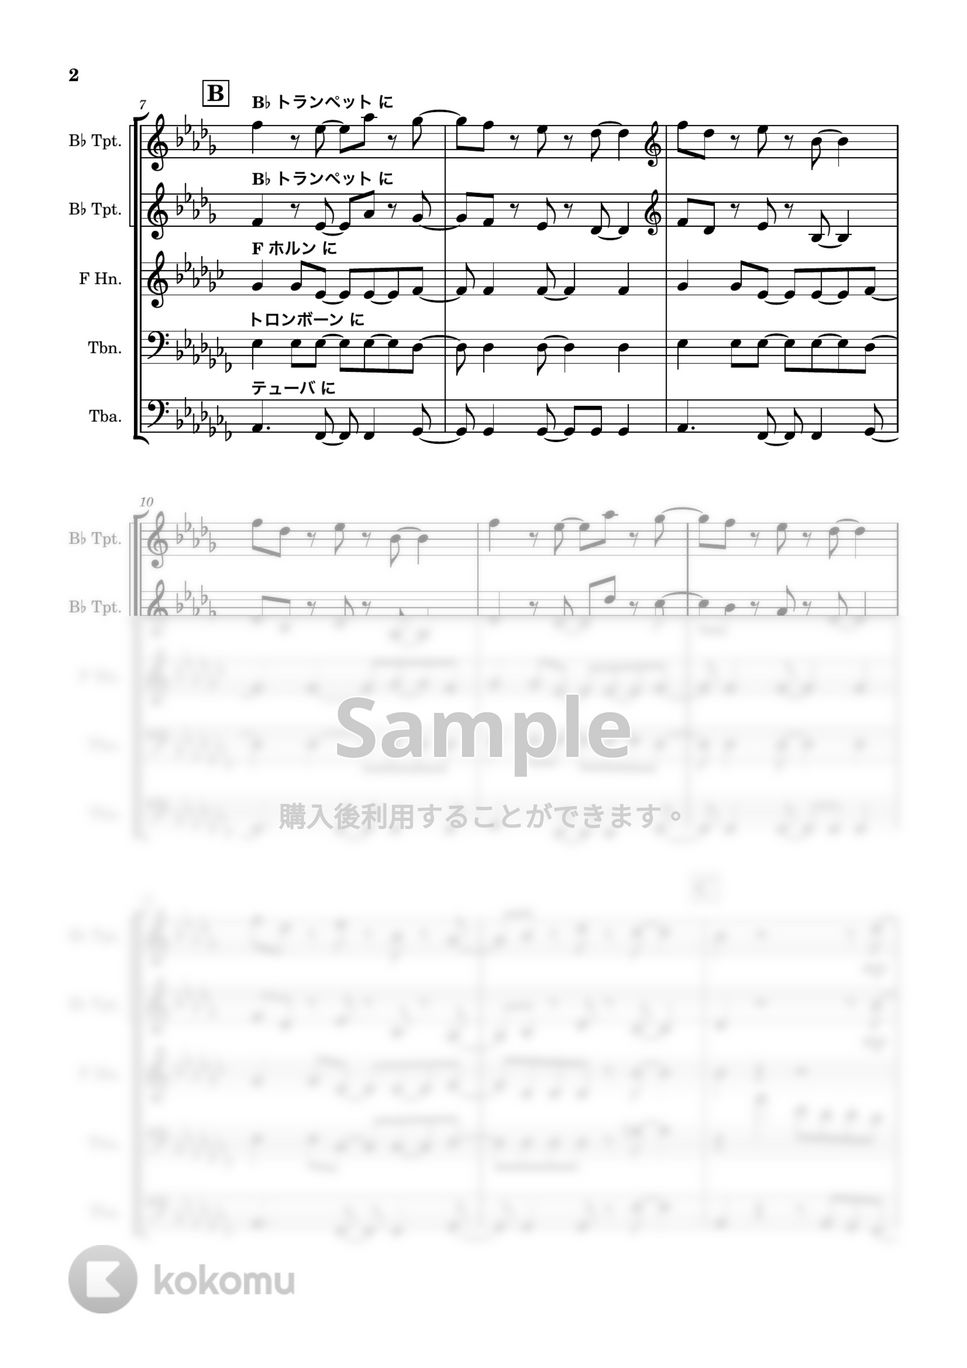 飛内将大 - 残響散歌 (金管５重奏) by 川上龍